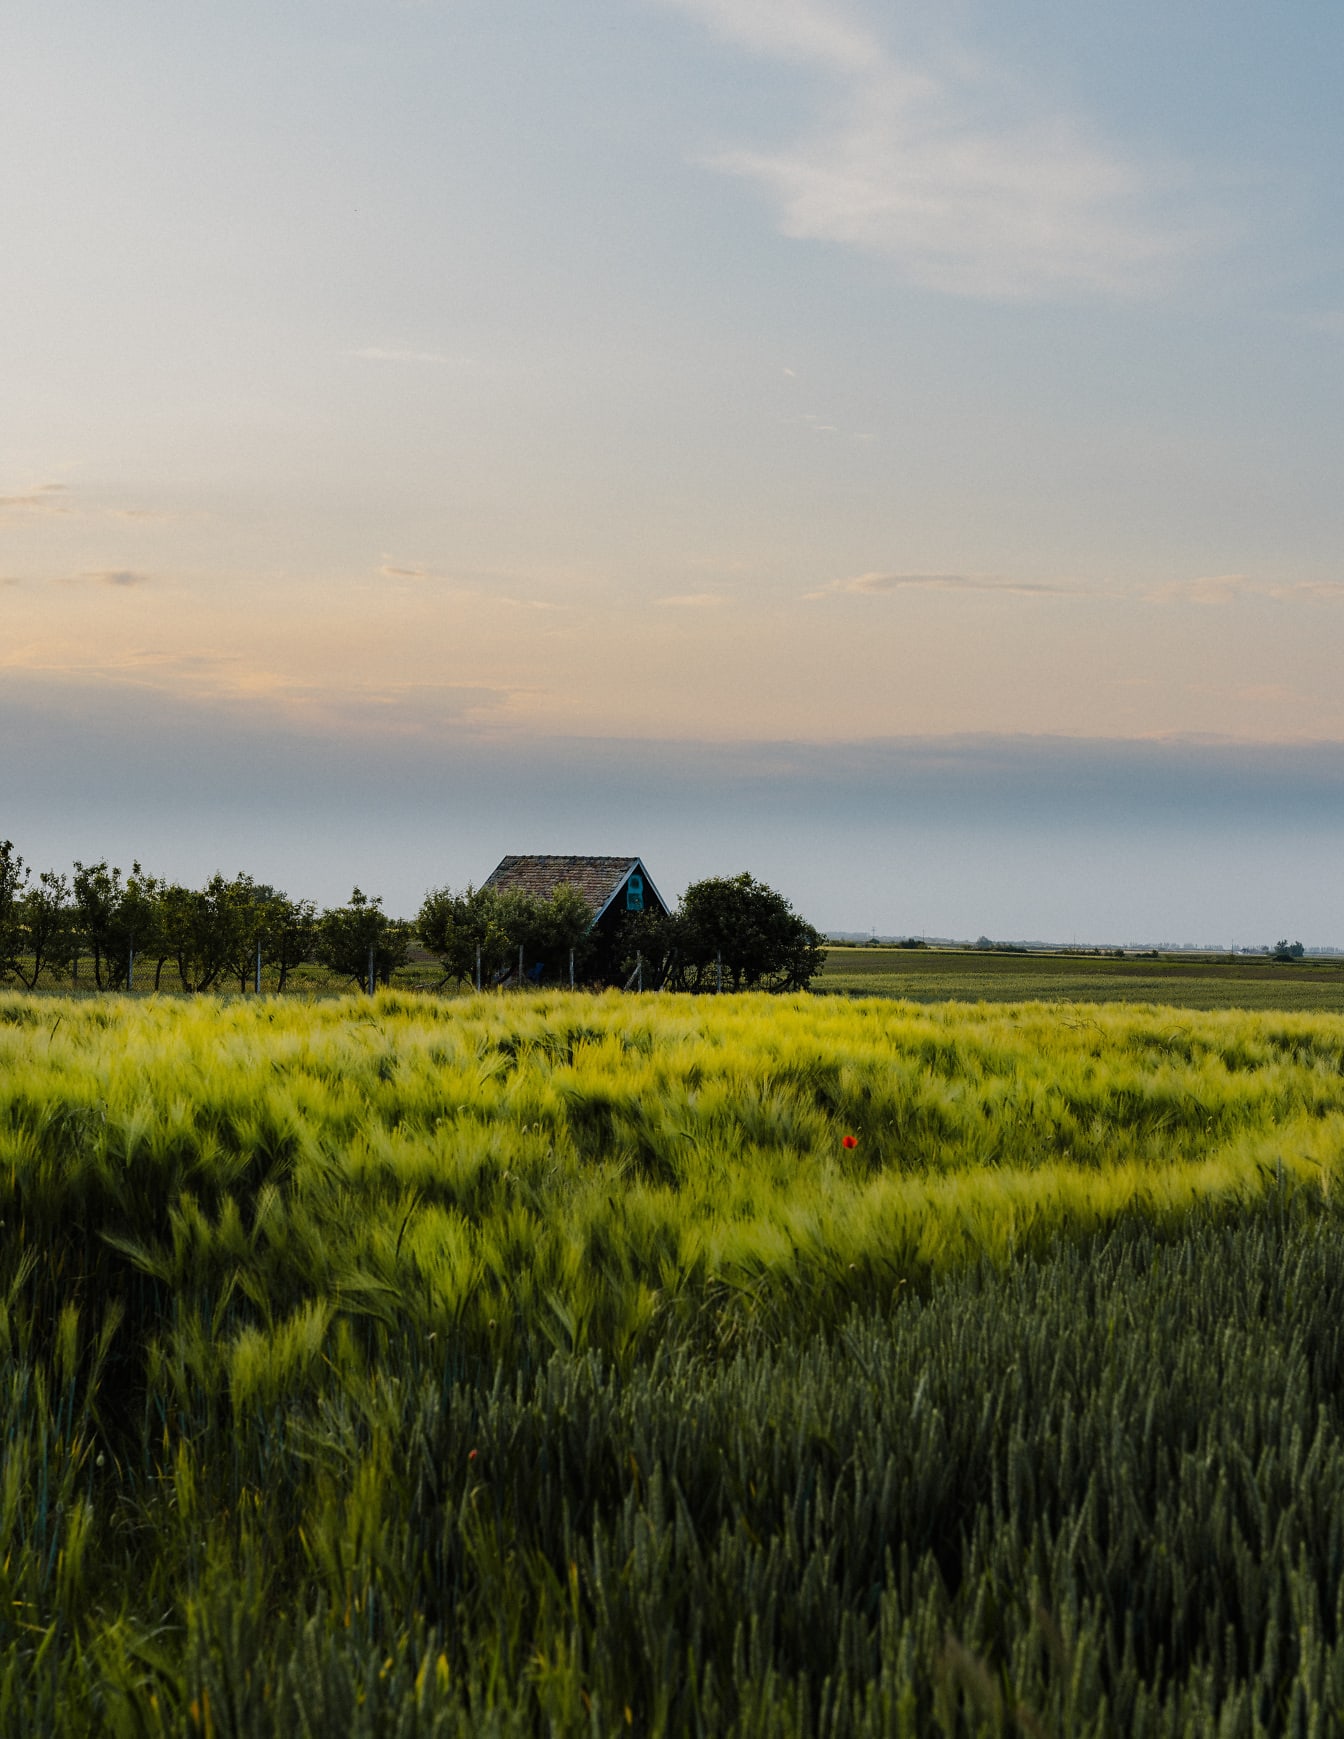 Зеленовато-желтое ячменное сельскохозяйственное поле в сельской местности с фермерским домом